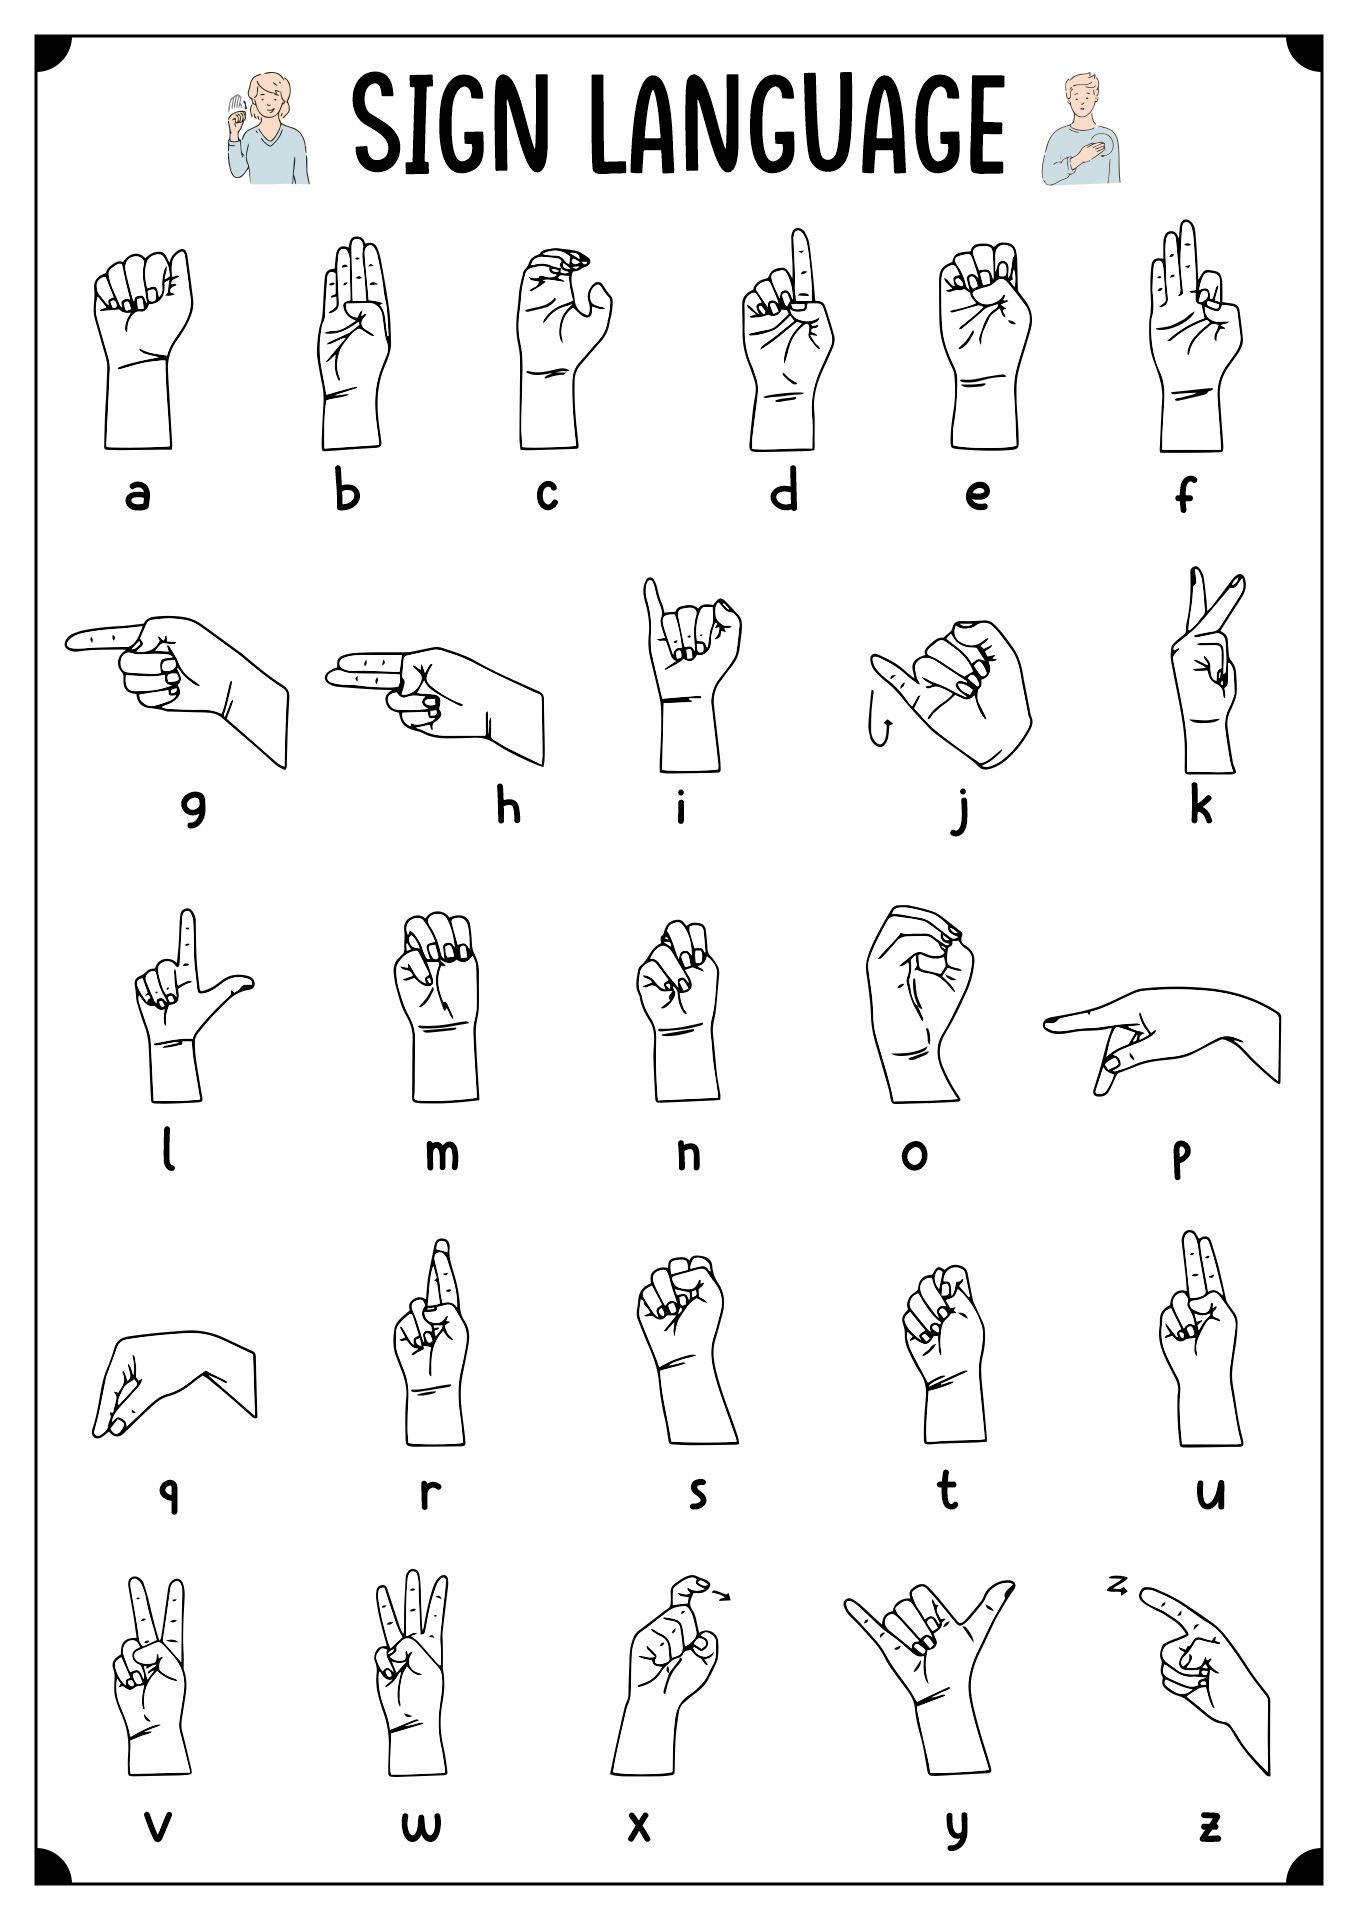 Sign Language Pledge Image